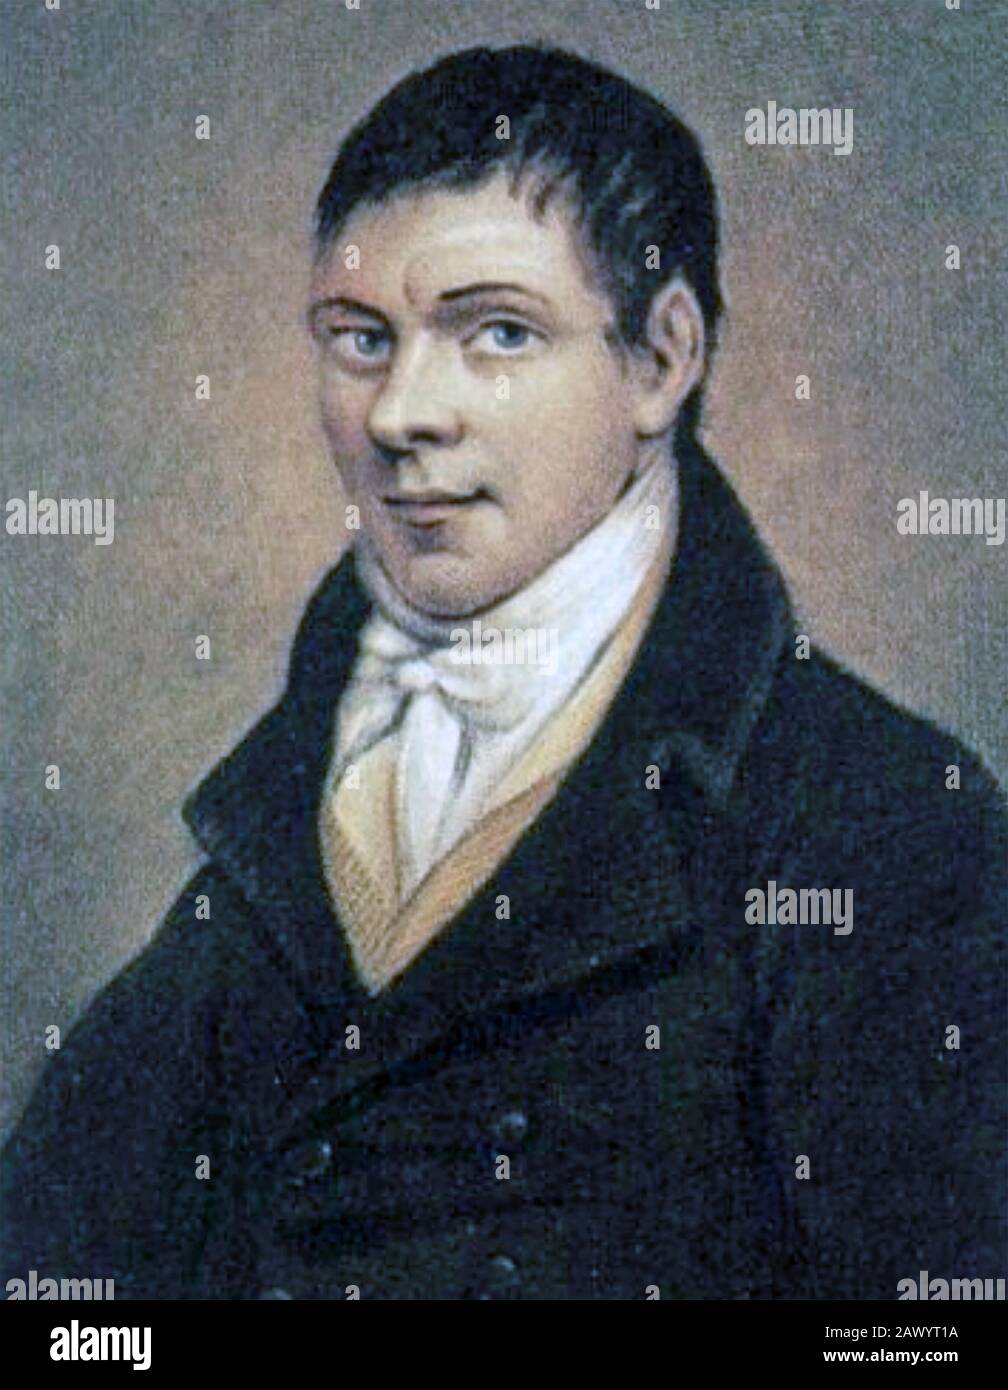 Michael DWYER (1772-1825), chef des Irishmen Unis dans la Réblion de 1789 Banque D'Images